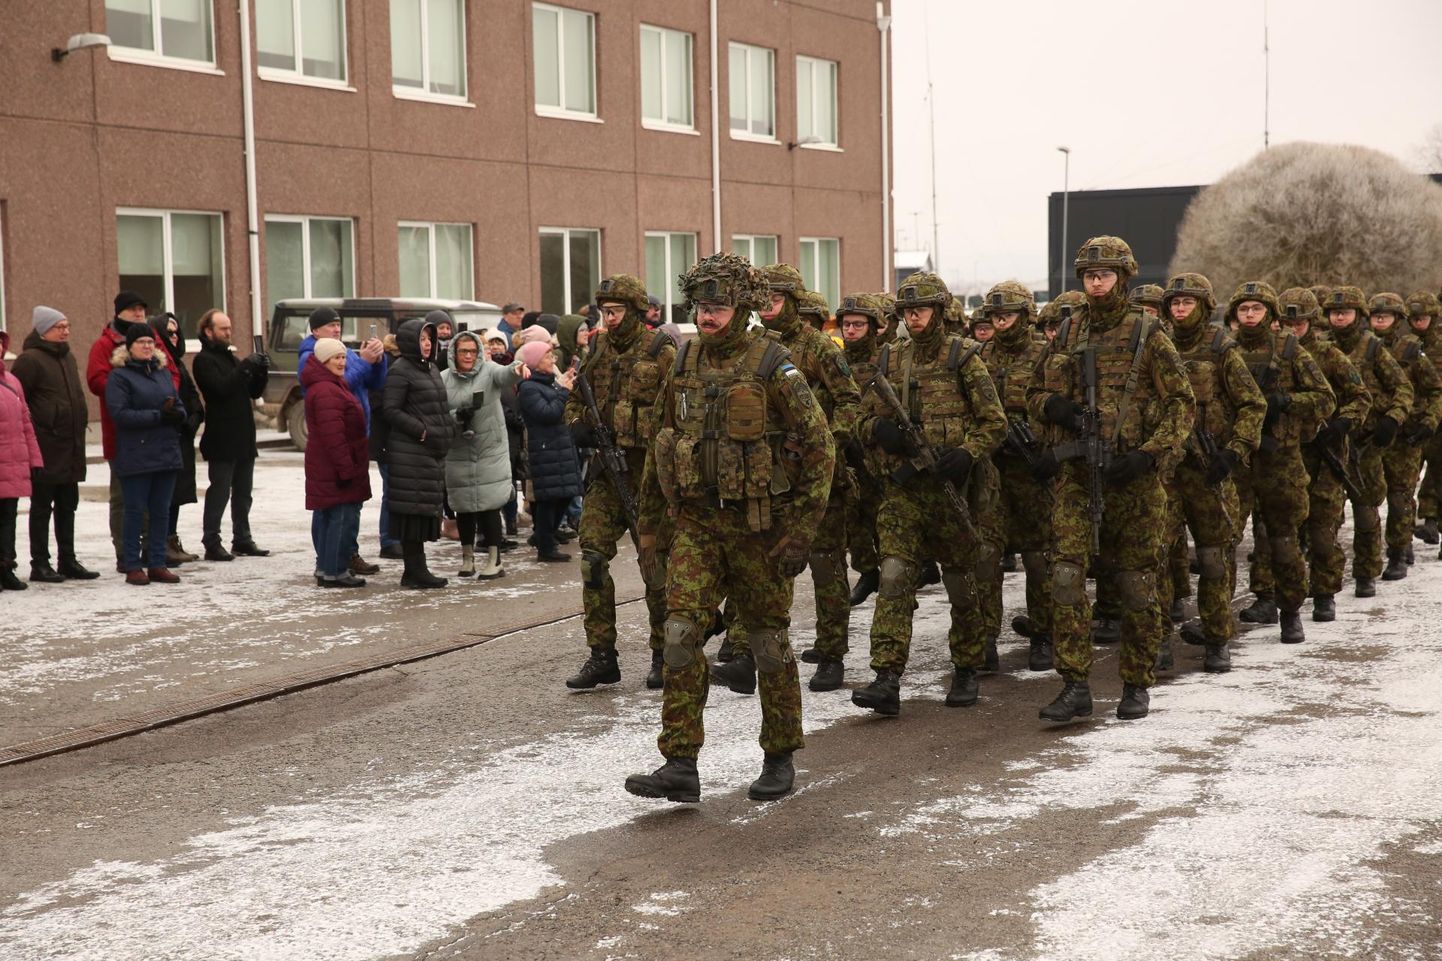 Diviisi 1. jalaväebrigaadi Tapa linnakus toimunud pidulikul rivistustel vandusid Eesti riigile truudust pea 180 sõdurit.